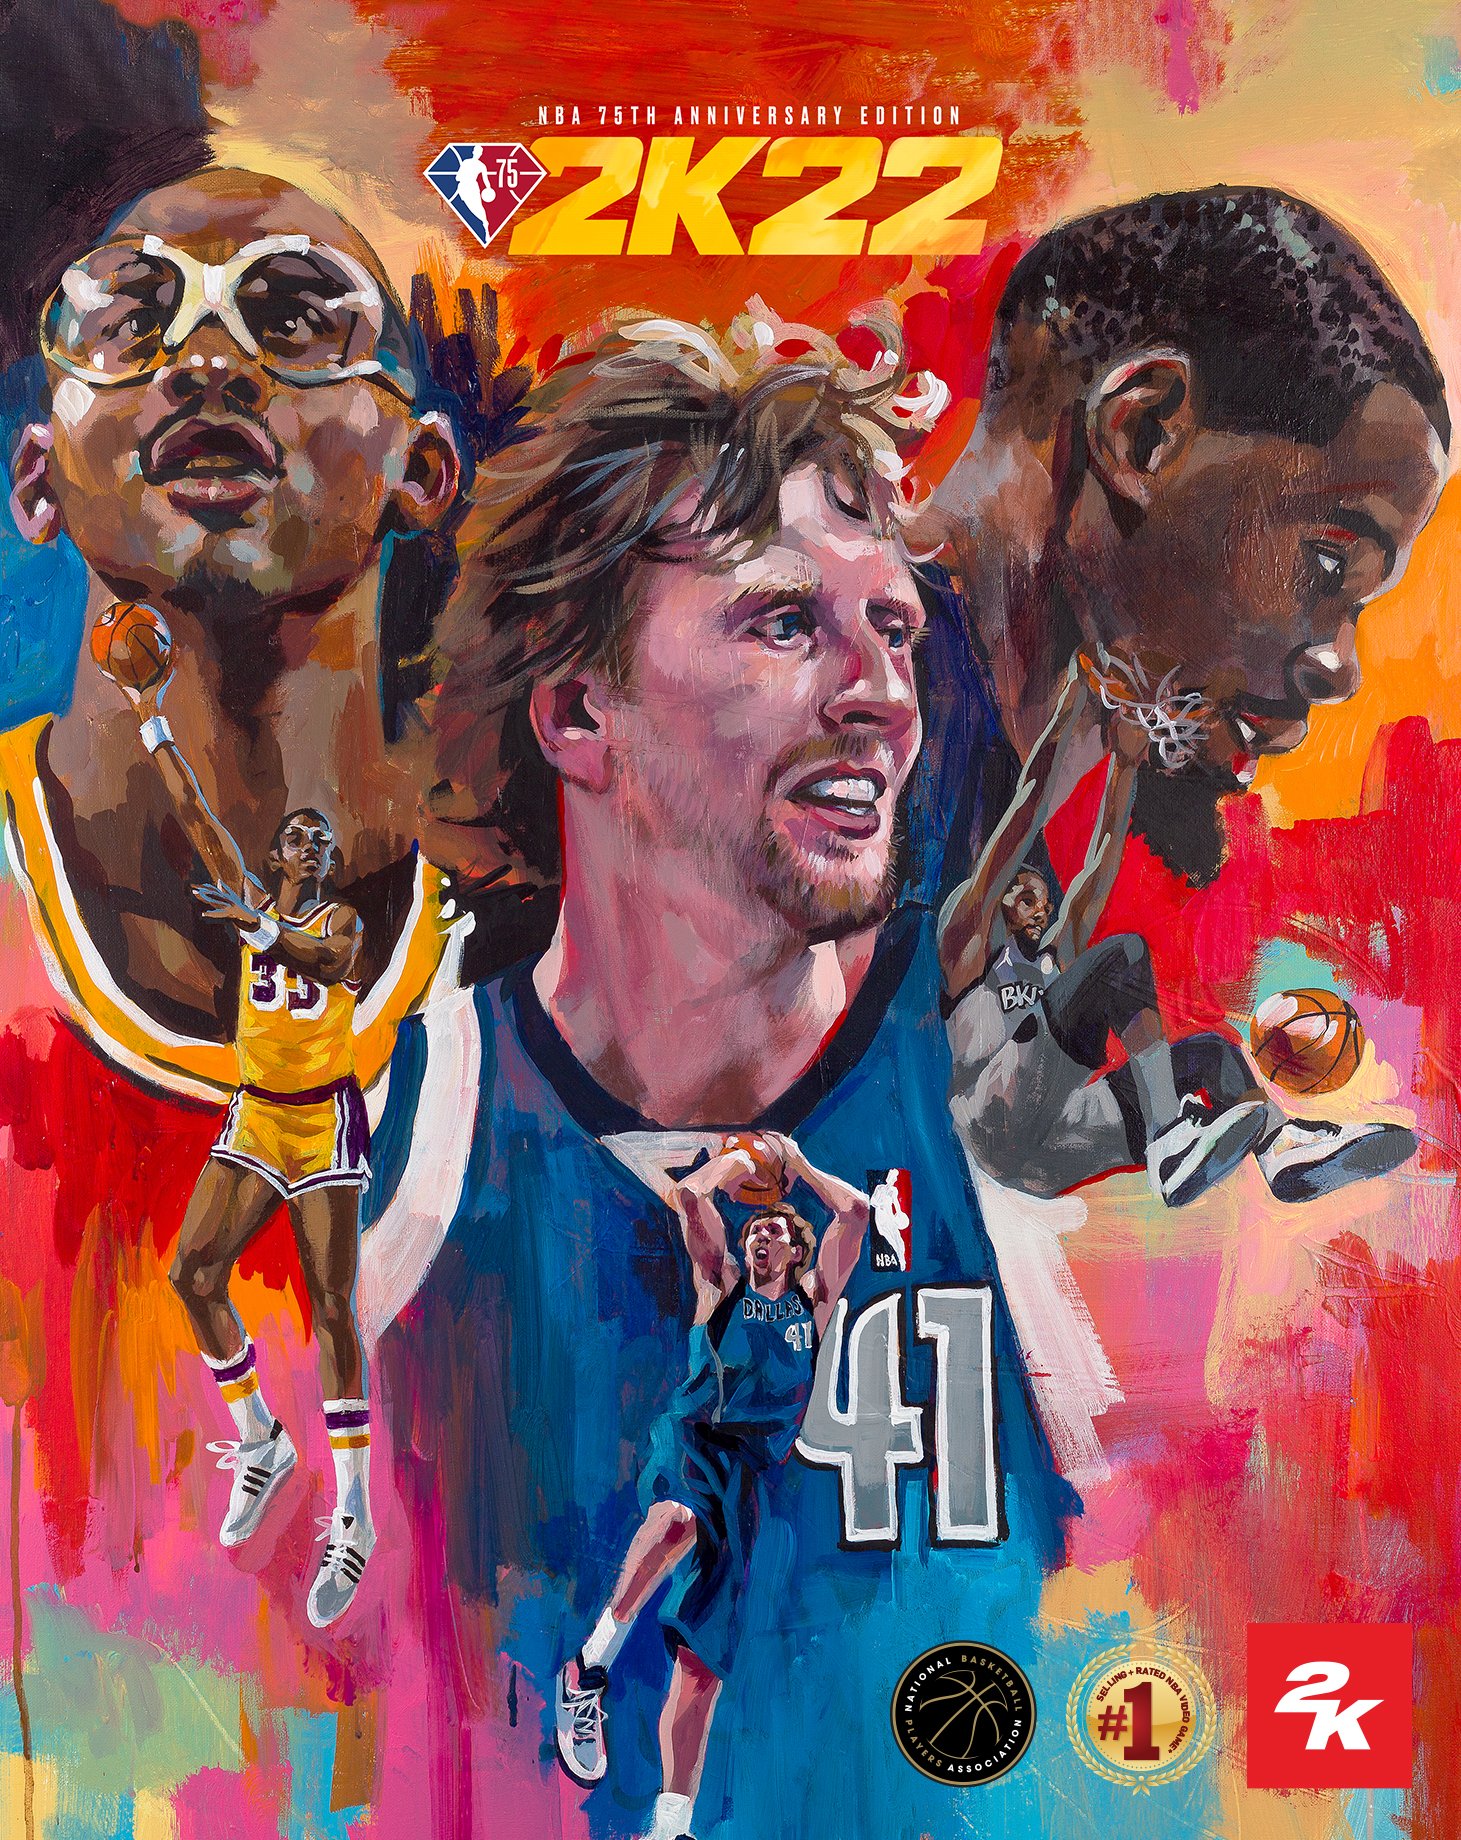 NBA 75 週年紀念版和跨世代數位同捆的封面圖 NBA 史上最具影響力的長人三巨頭擔當。